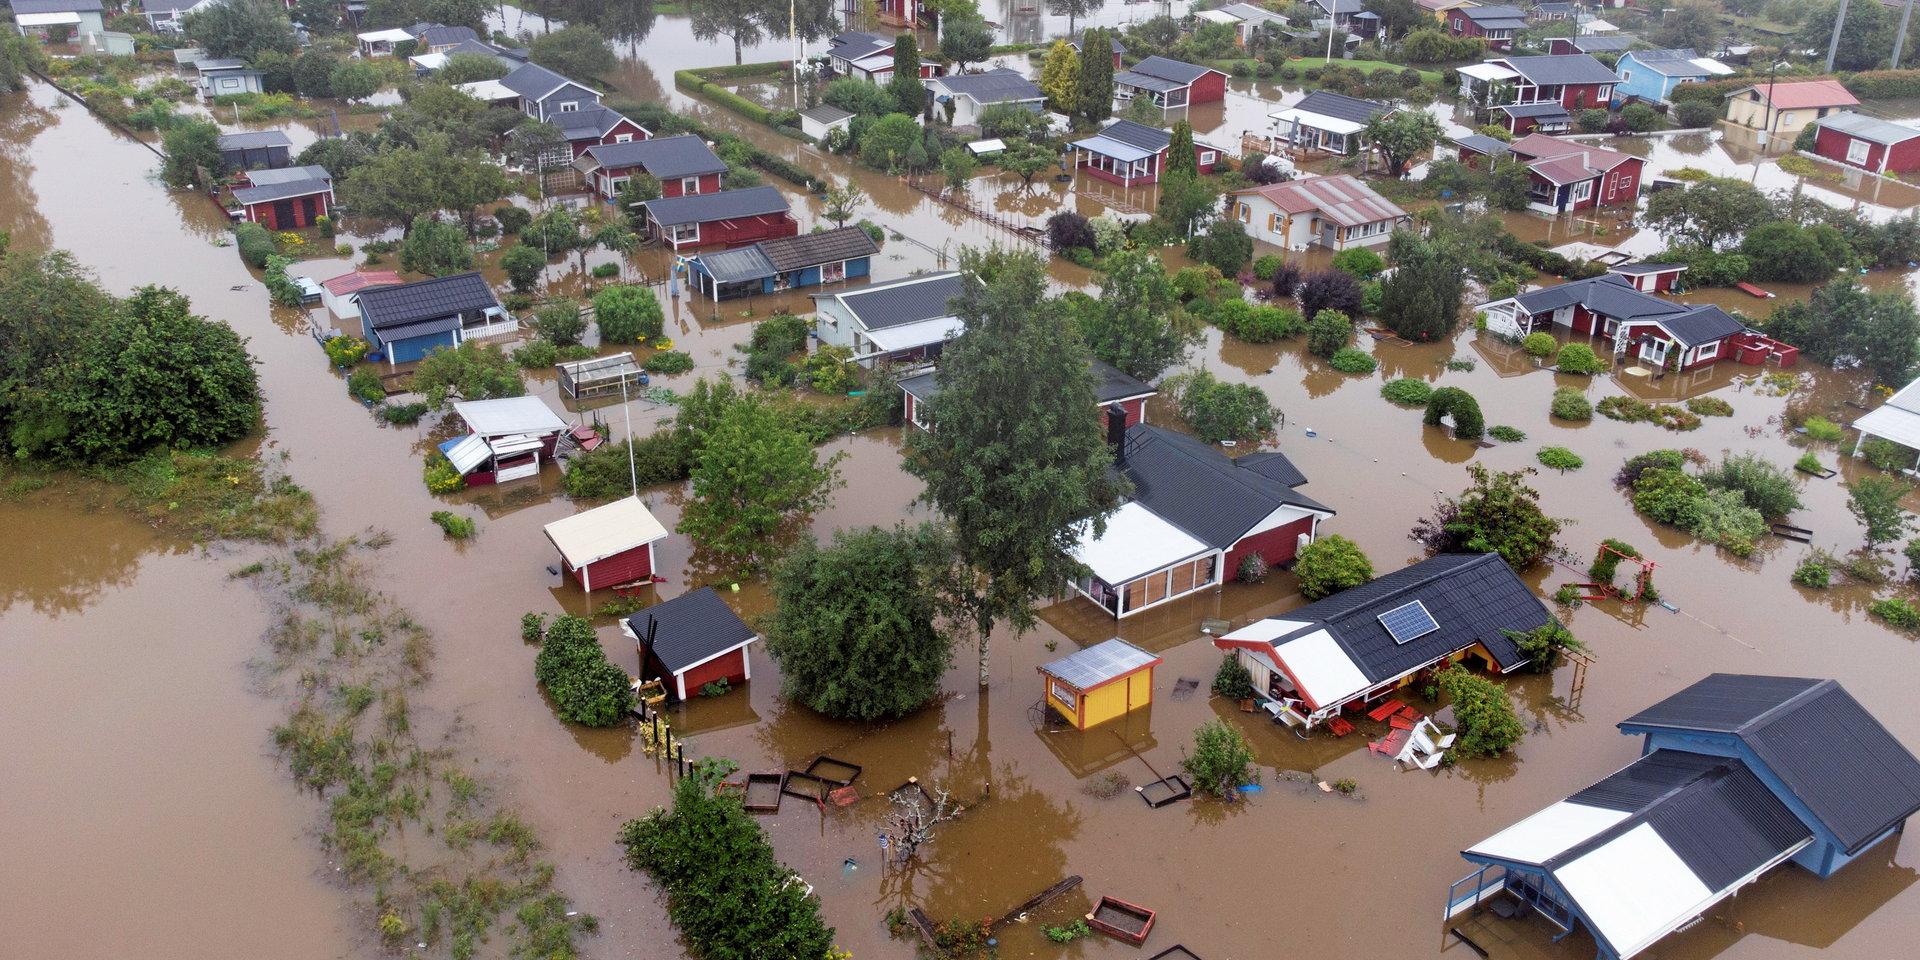 Översvämningarna som drabbade Sverige och Europa i somras är nära och konkreta exempel på de förödande konsekvenserna som klimatförändringarna medför, skriver insändarskribenterna.